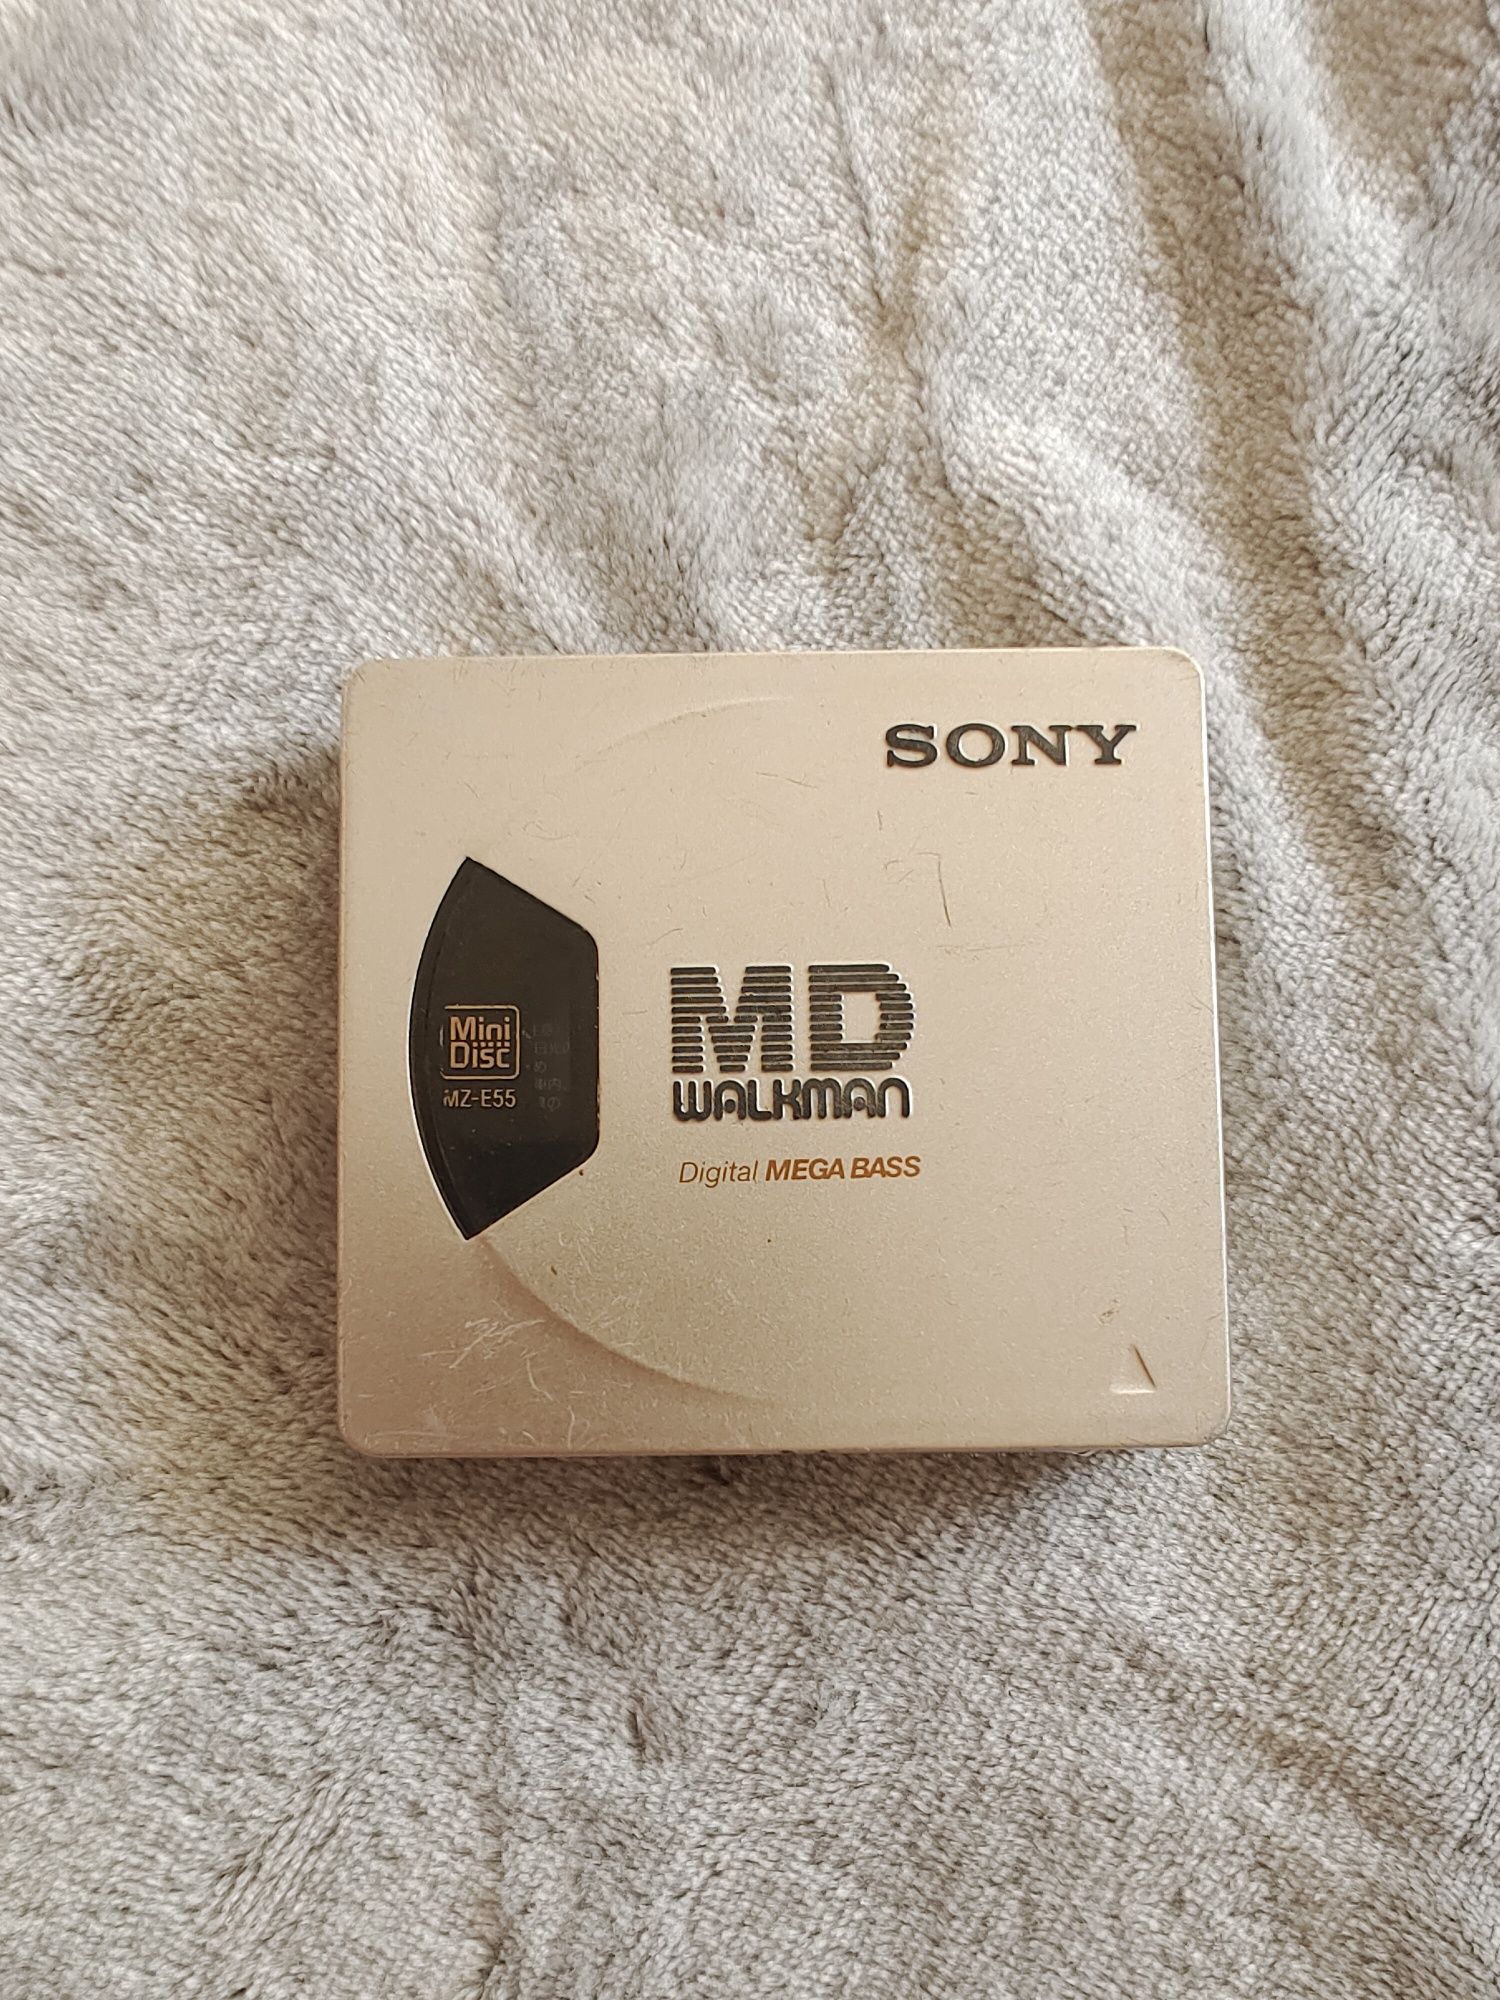 Sony md walkman mz-e55